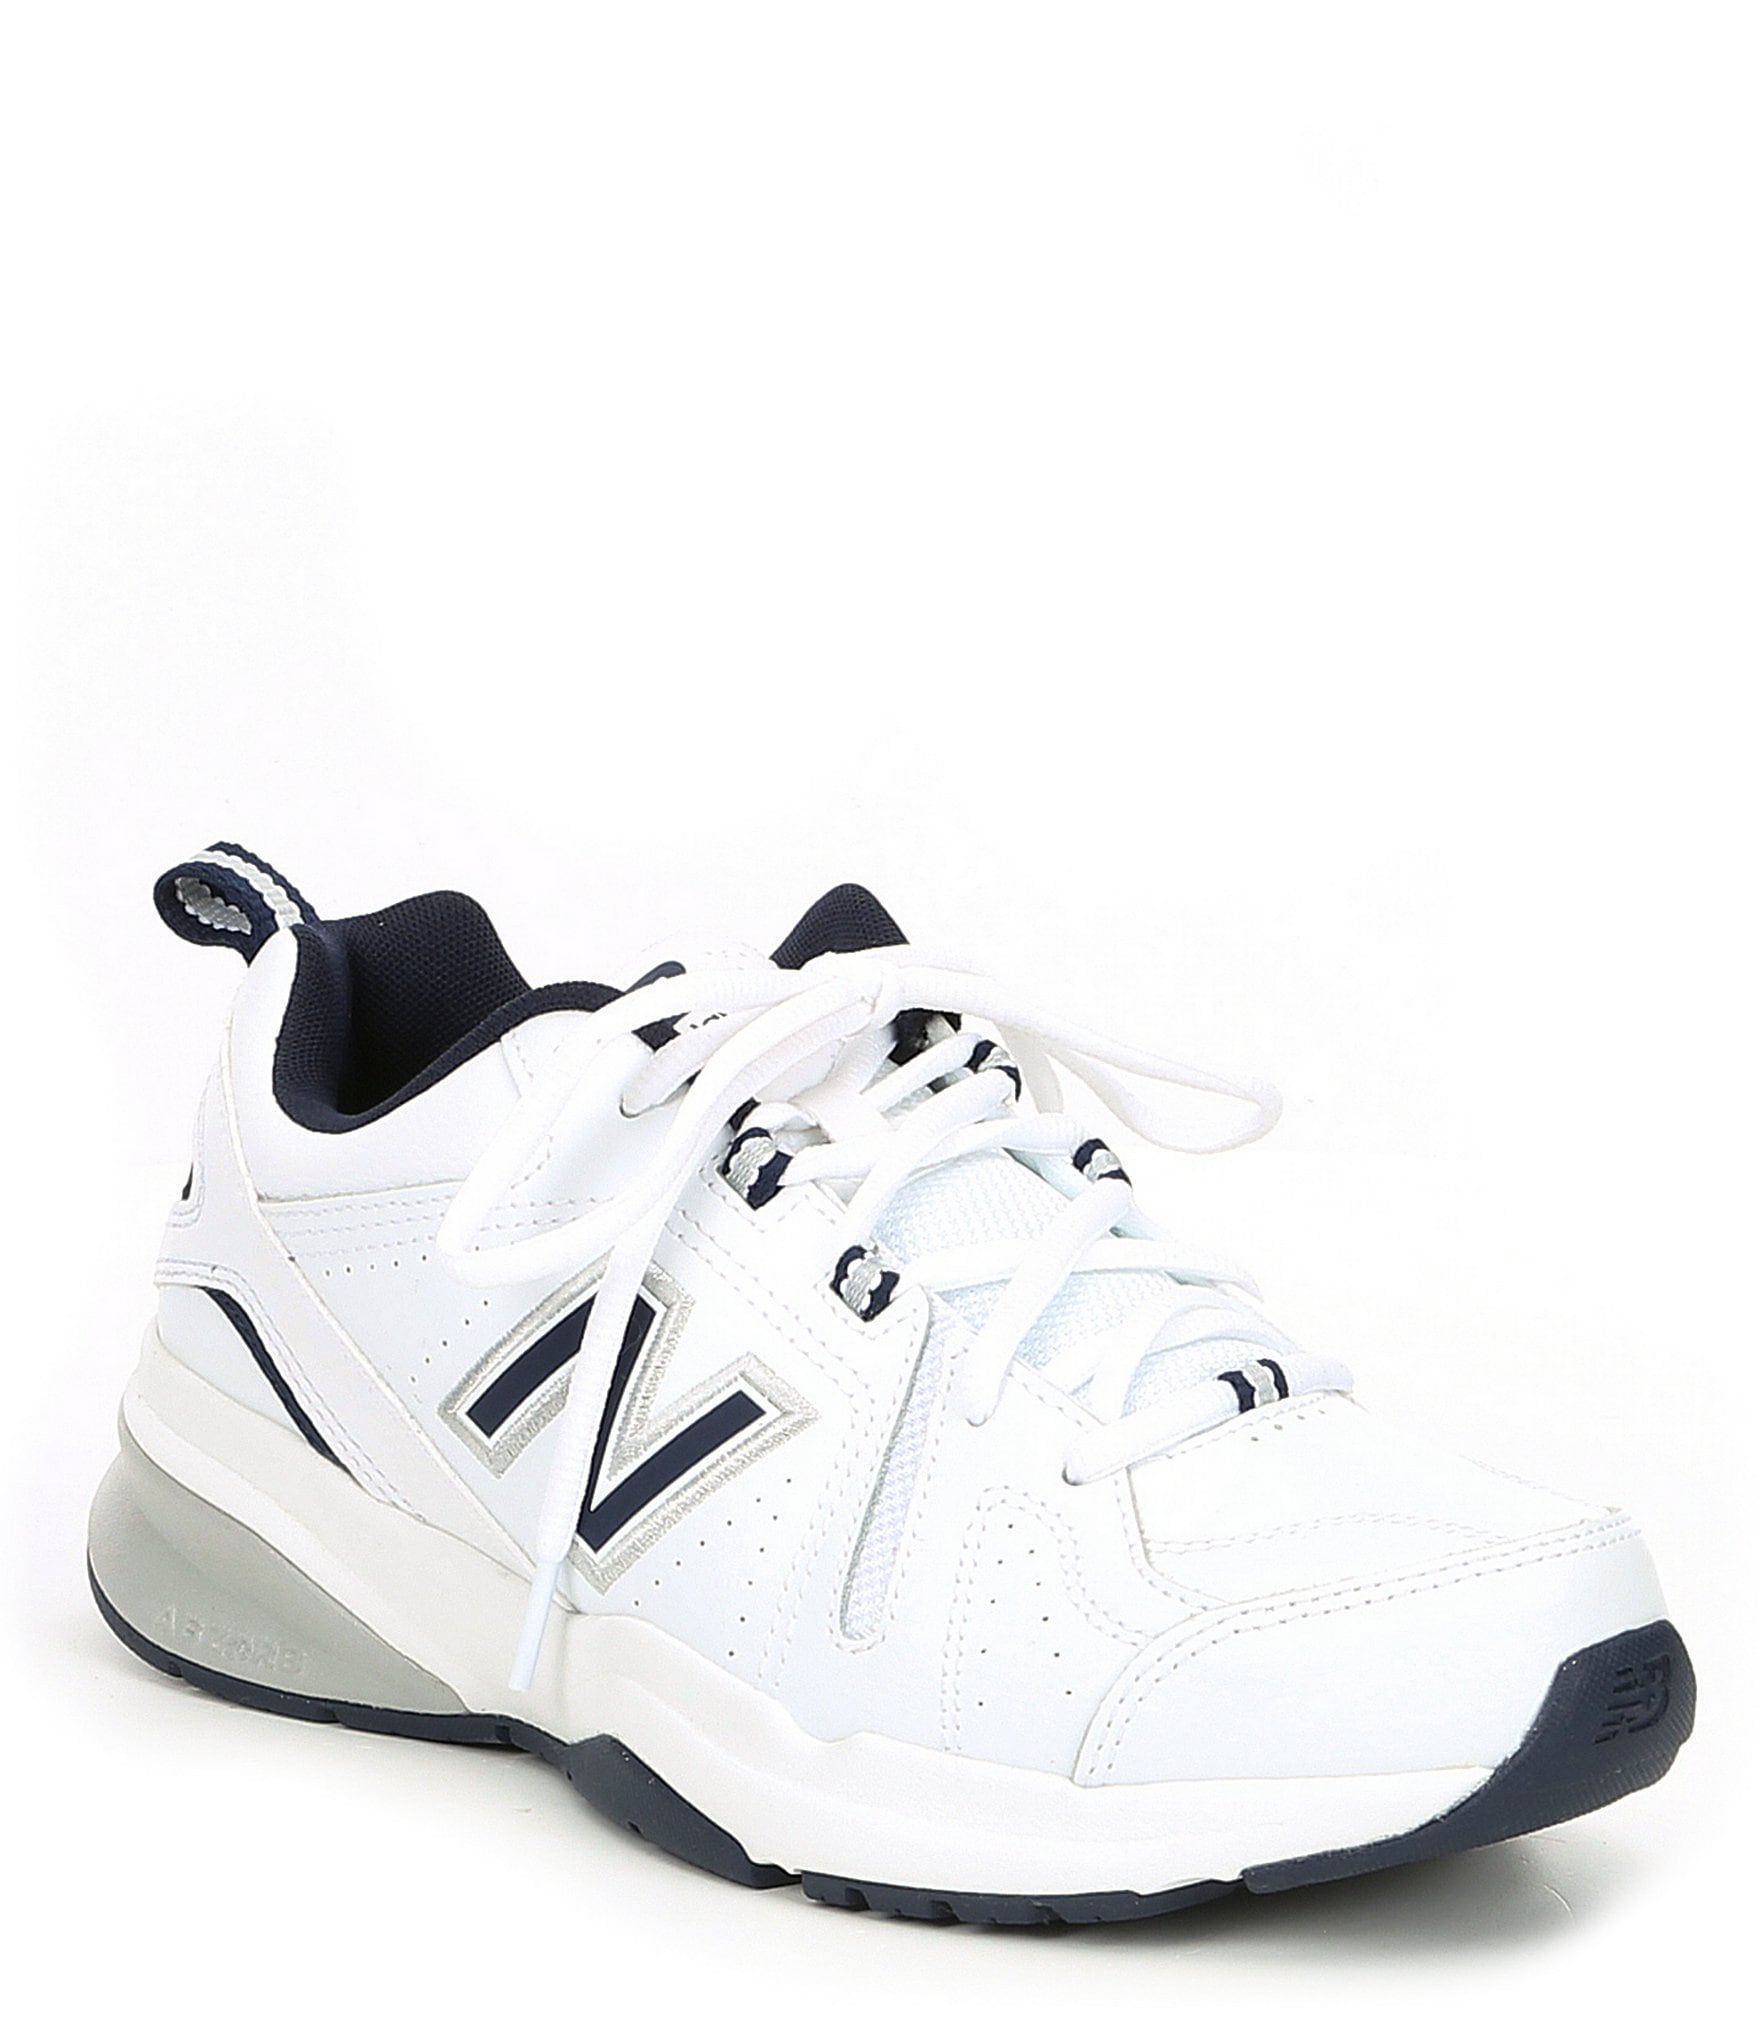 New Balance Men's 608 V5 Sneakers Dillard's | lupon.gov.ph